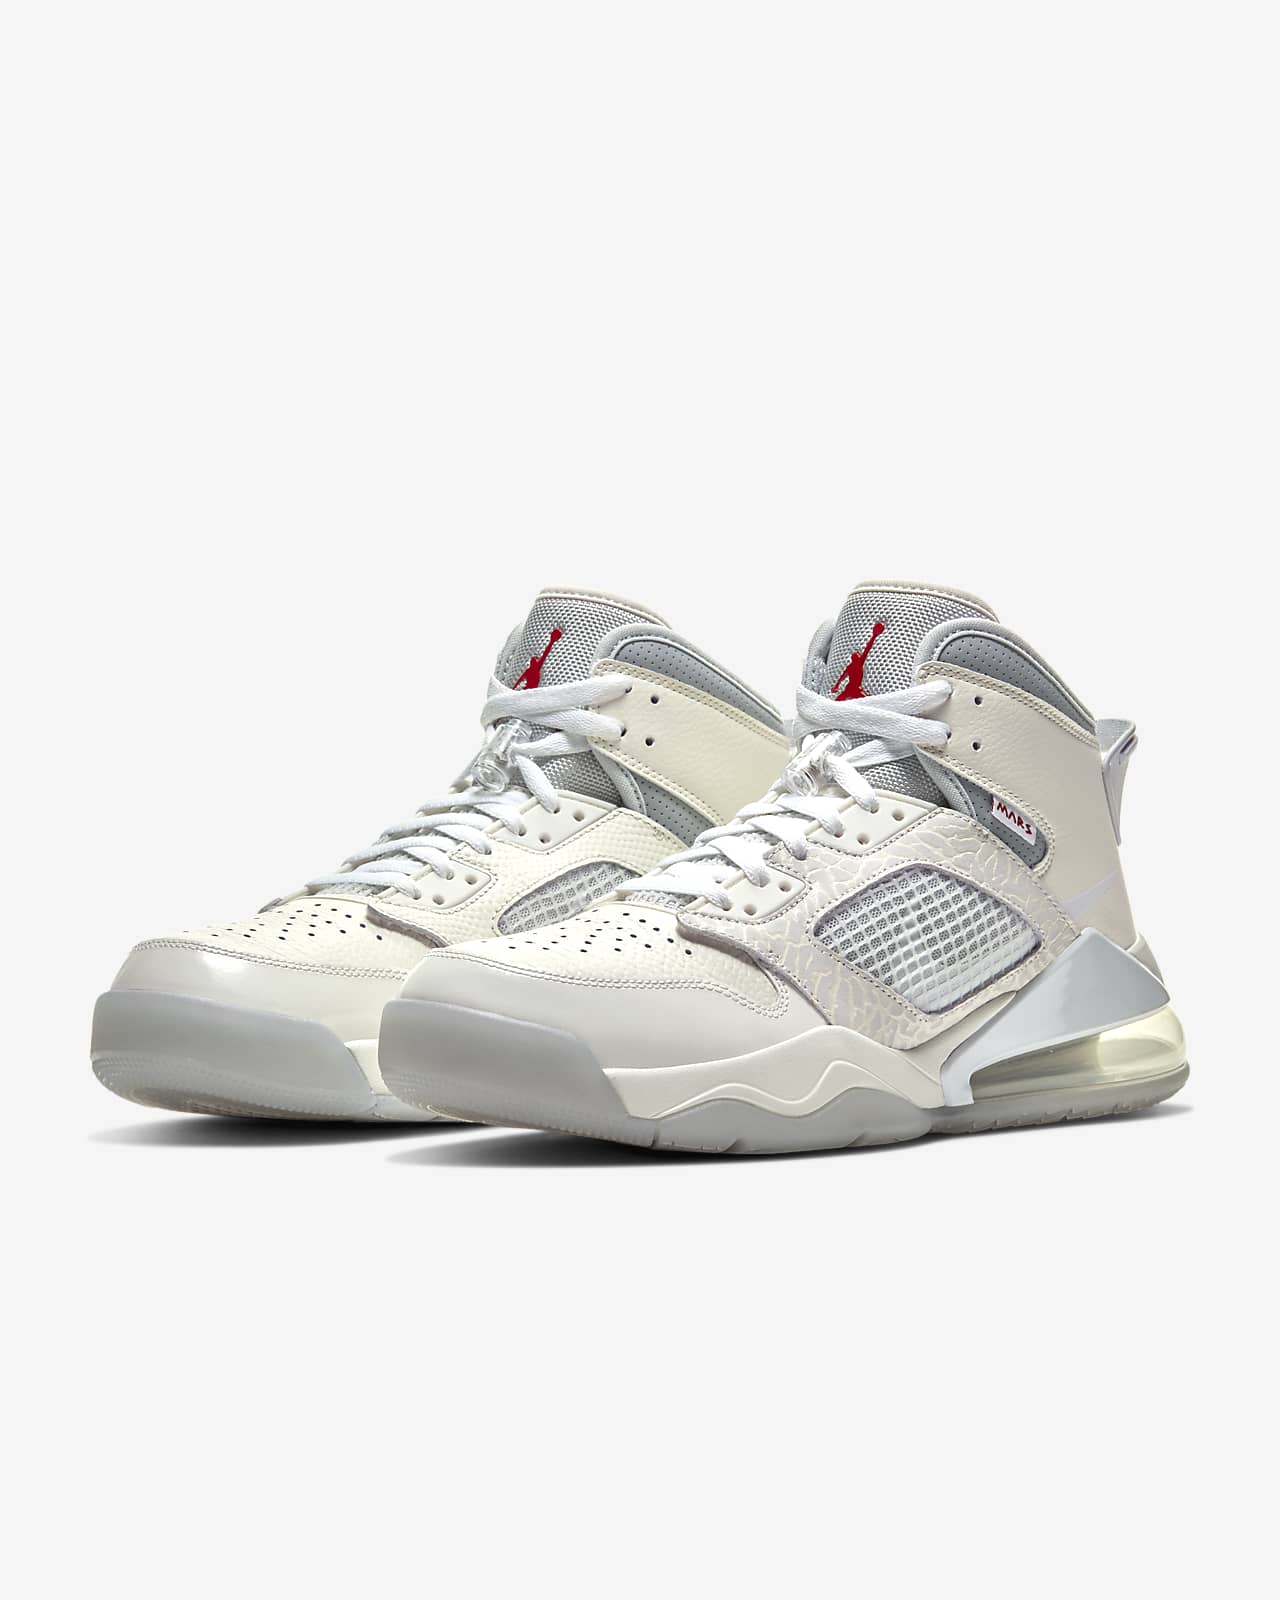 Jordan Mars 270 Men's Shoe. Nike LU